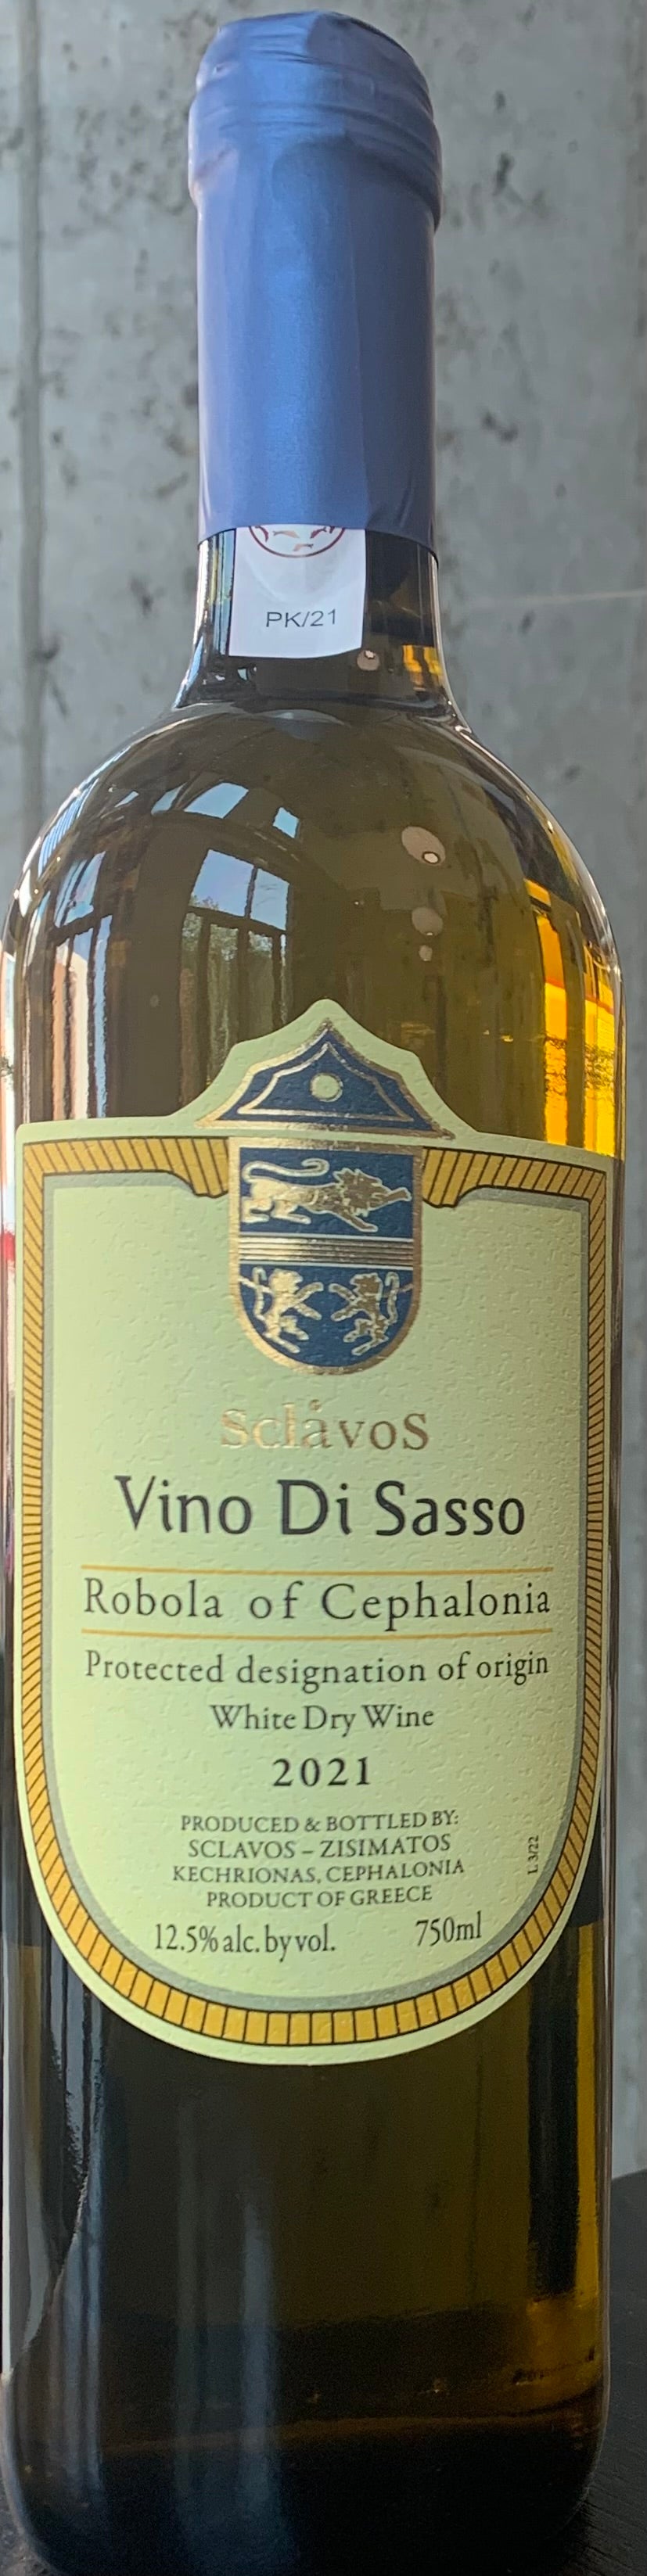 Sclavos "Vino di Sasso" Robola de Céphalonie '21